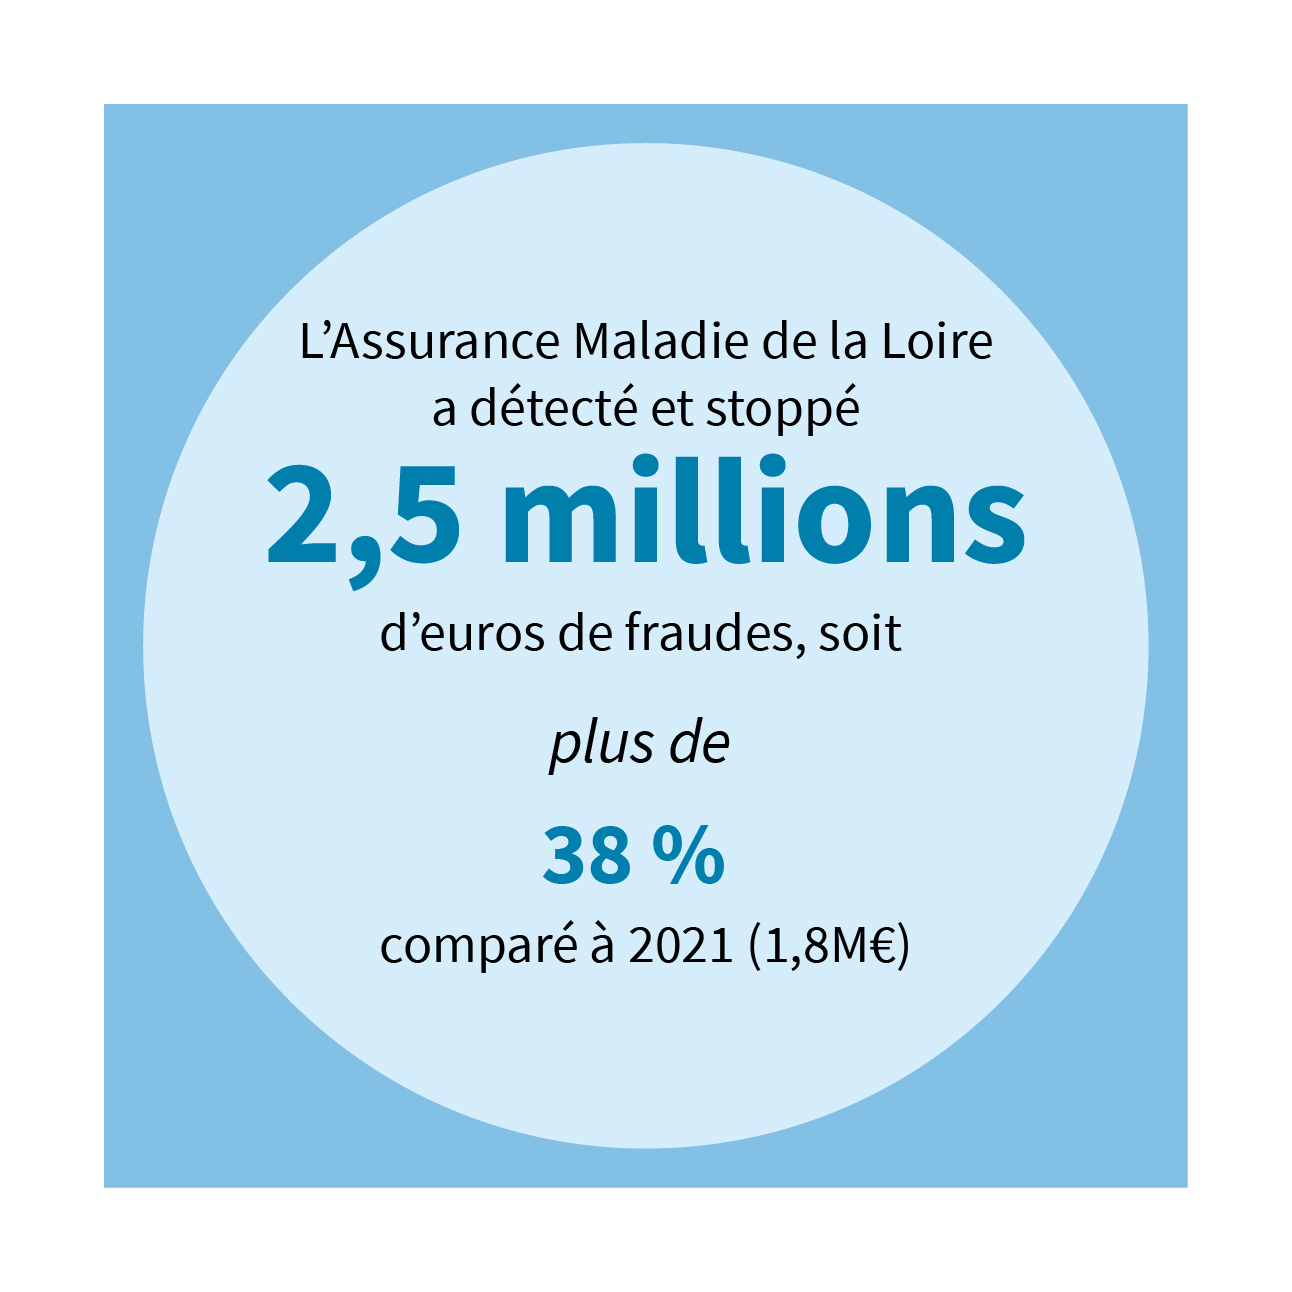 Assurance Maladie de la Loire a détecté et stoppé 2,5 millions d’euros de fraudes, soit + 38 % comparé à 2021 (1,8 M€)